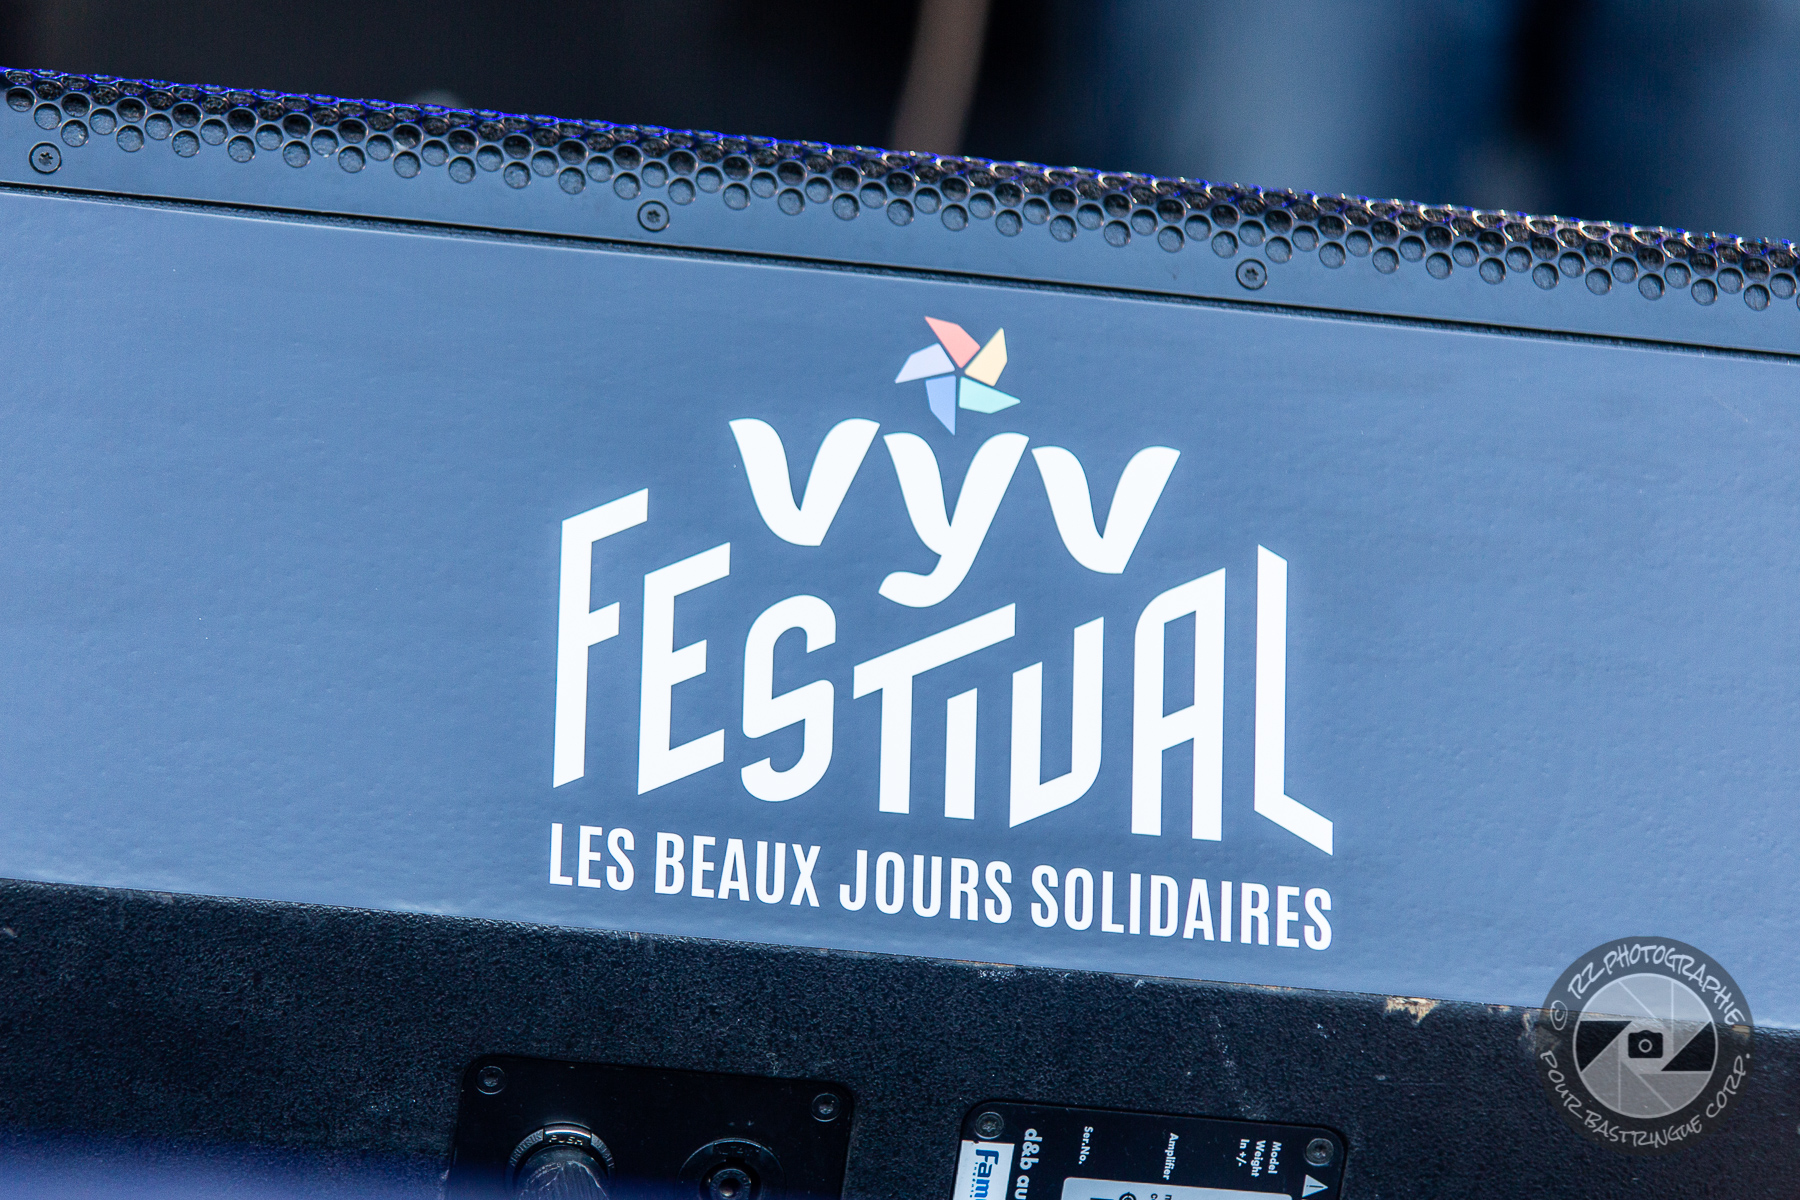 VyV Festival 2022 : Jour 1